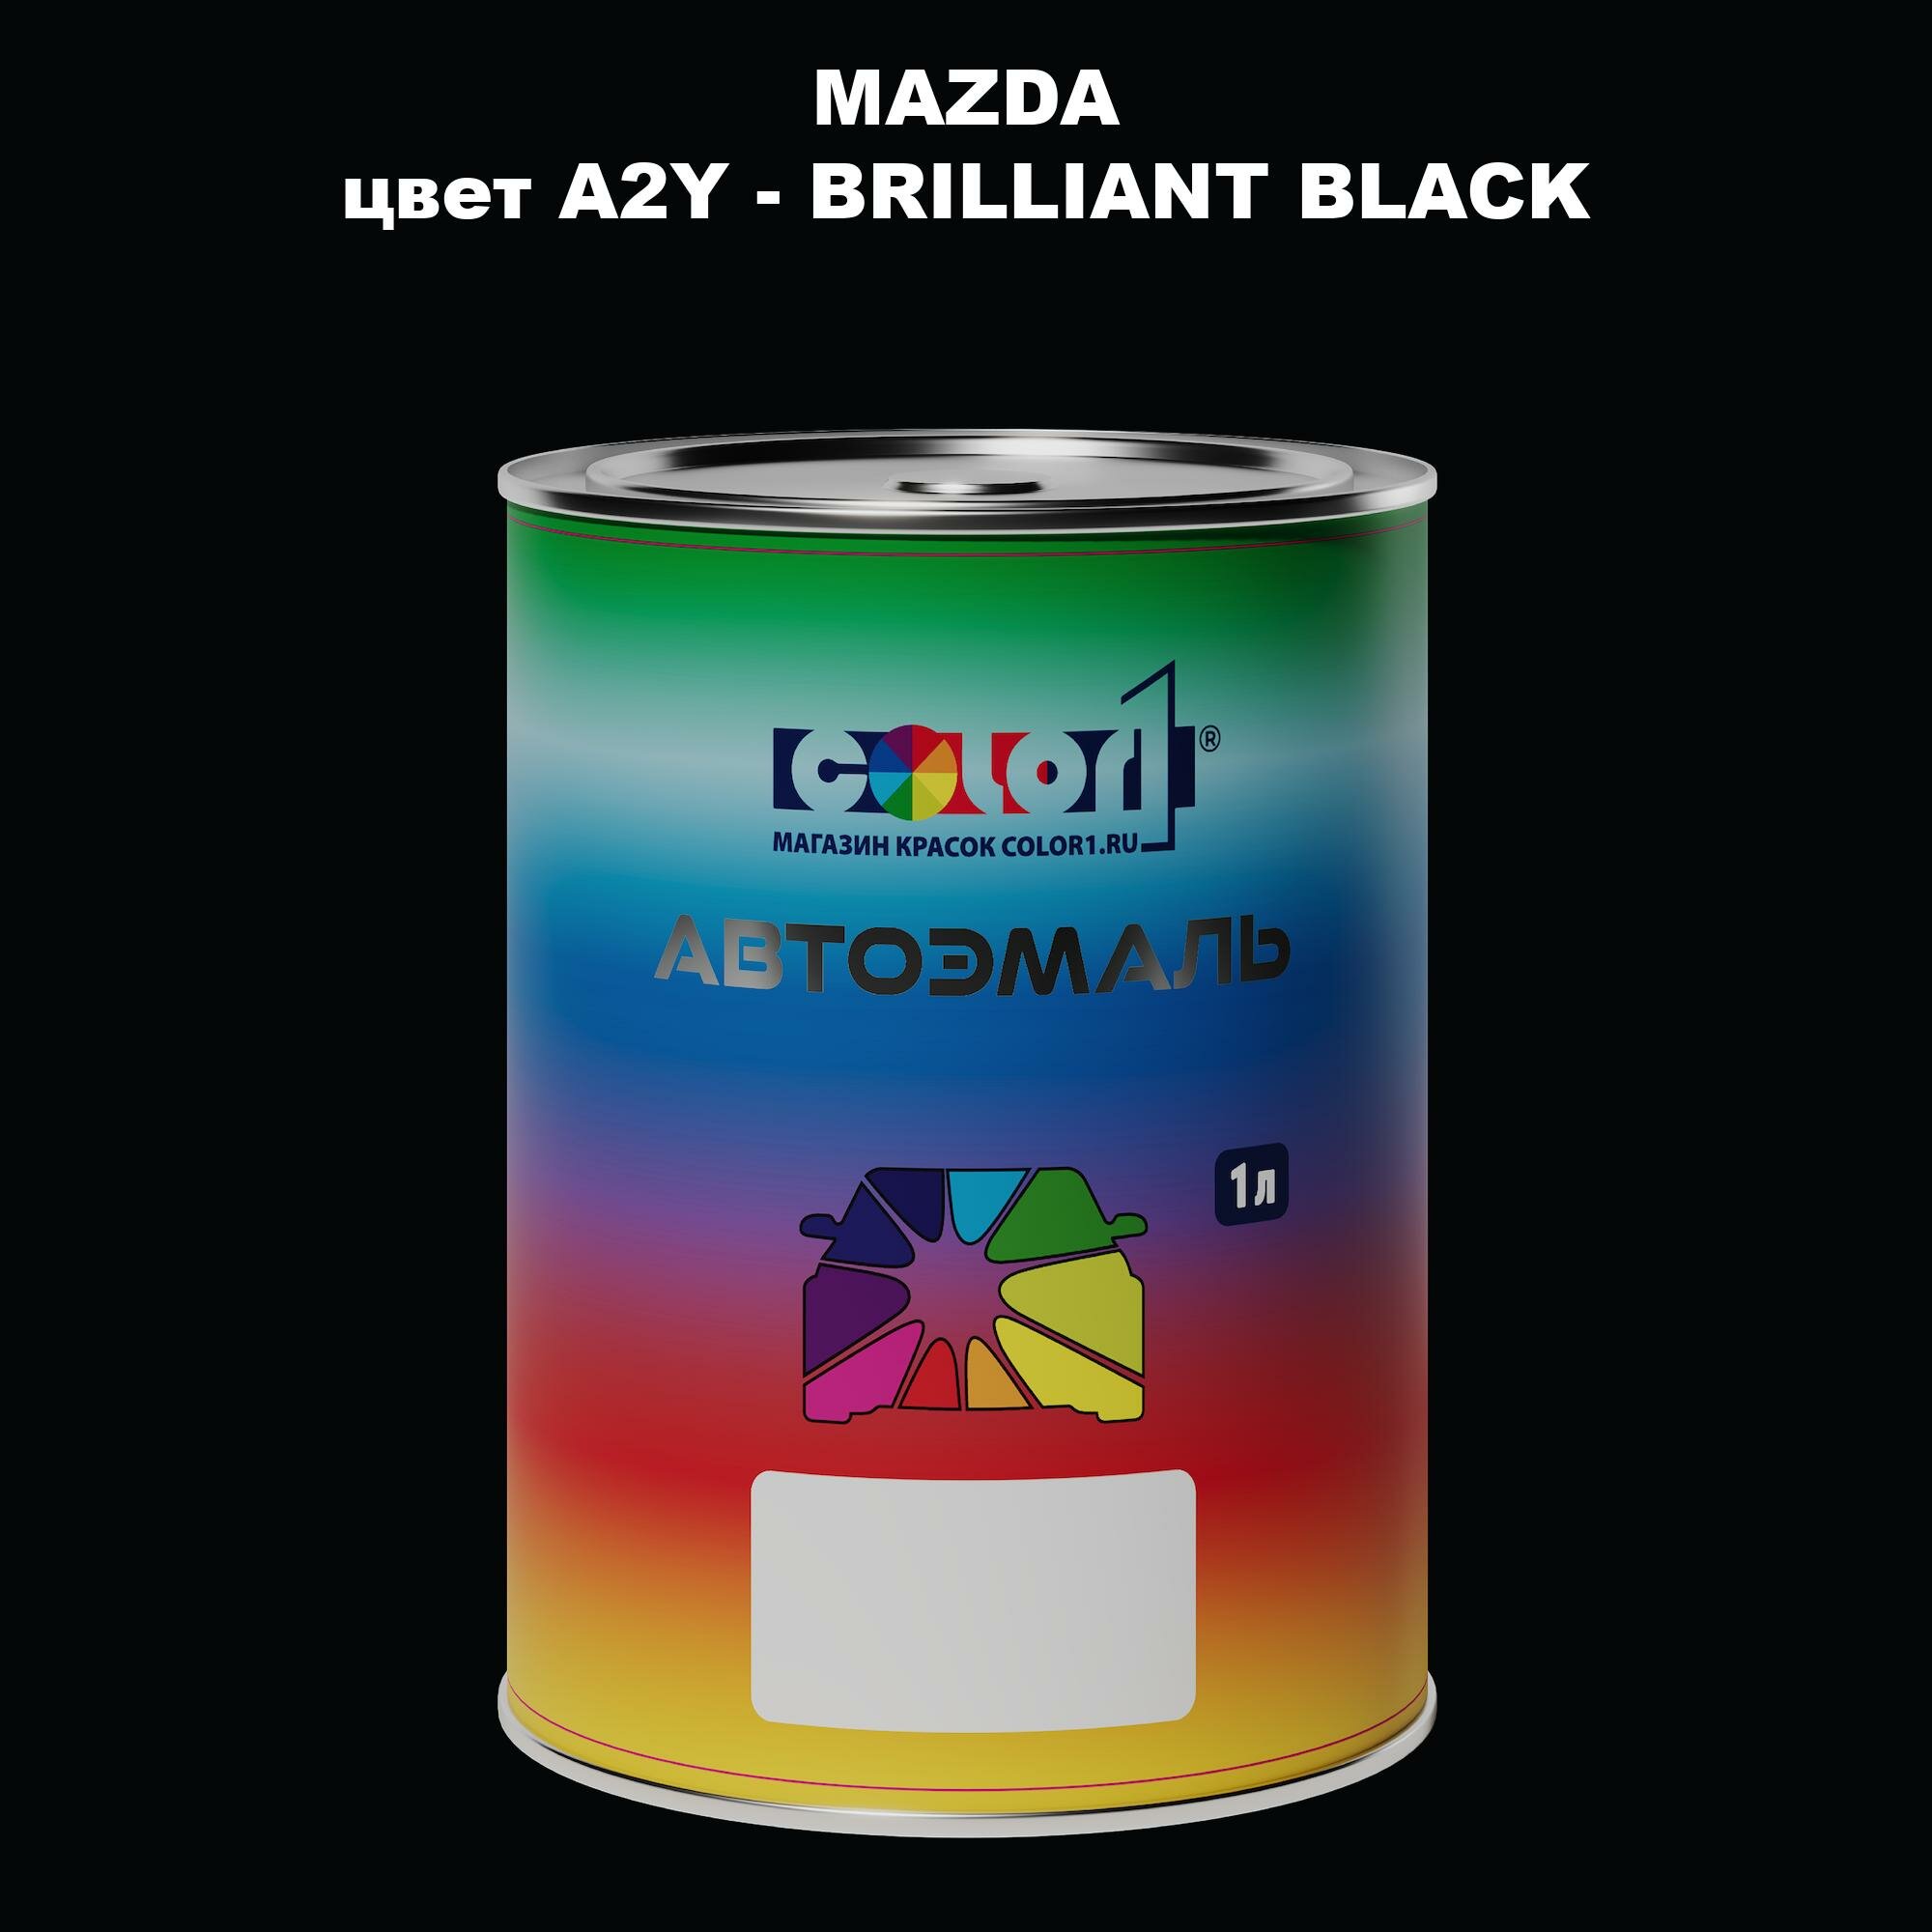 Автомобильная краска COLOR1 для MAZDA, цвет A2Y - BRILLIANT BLACK